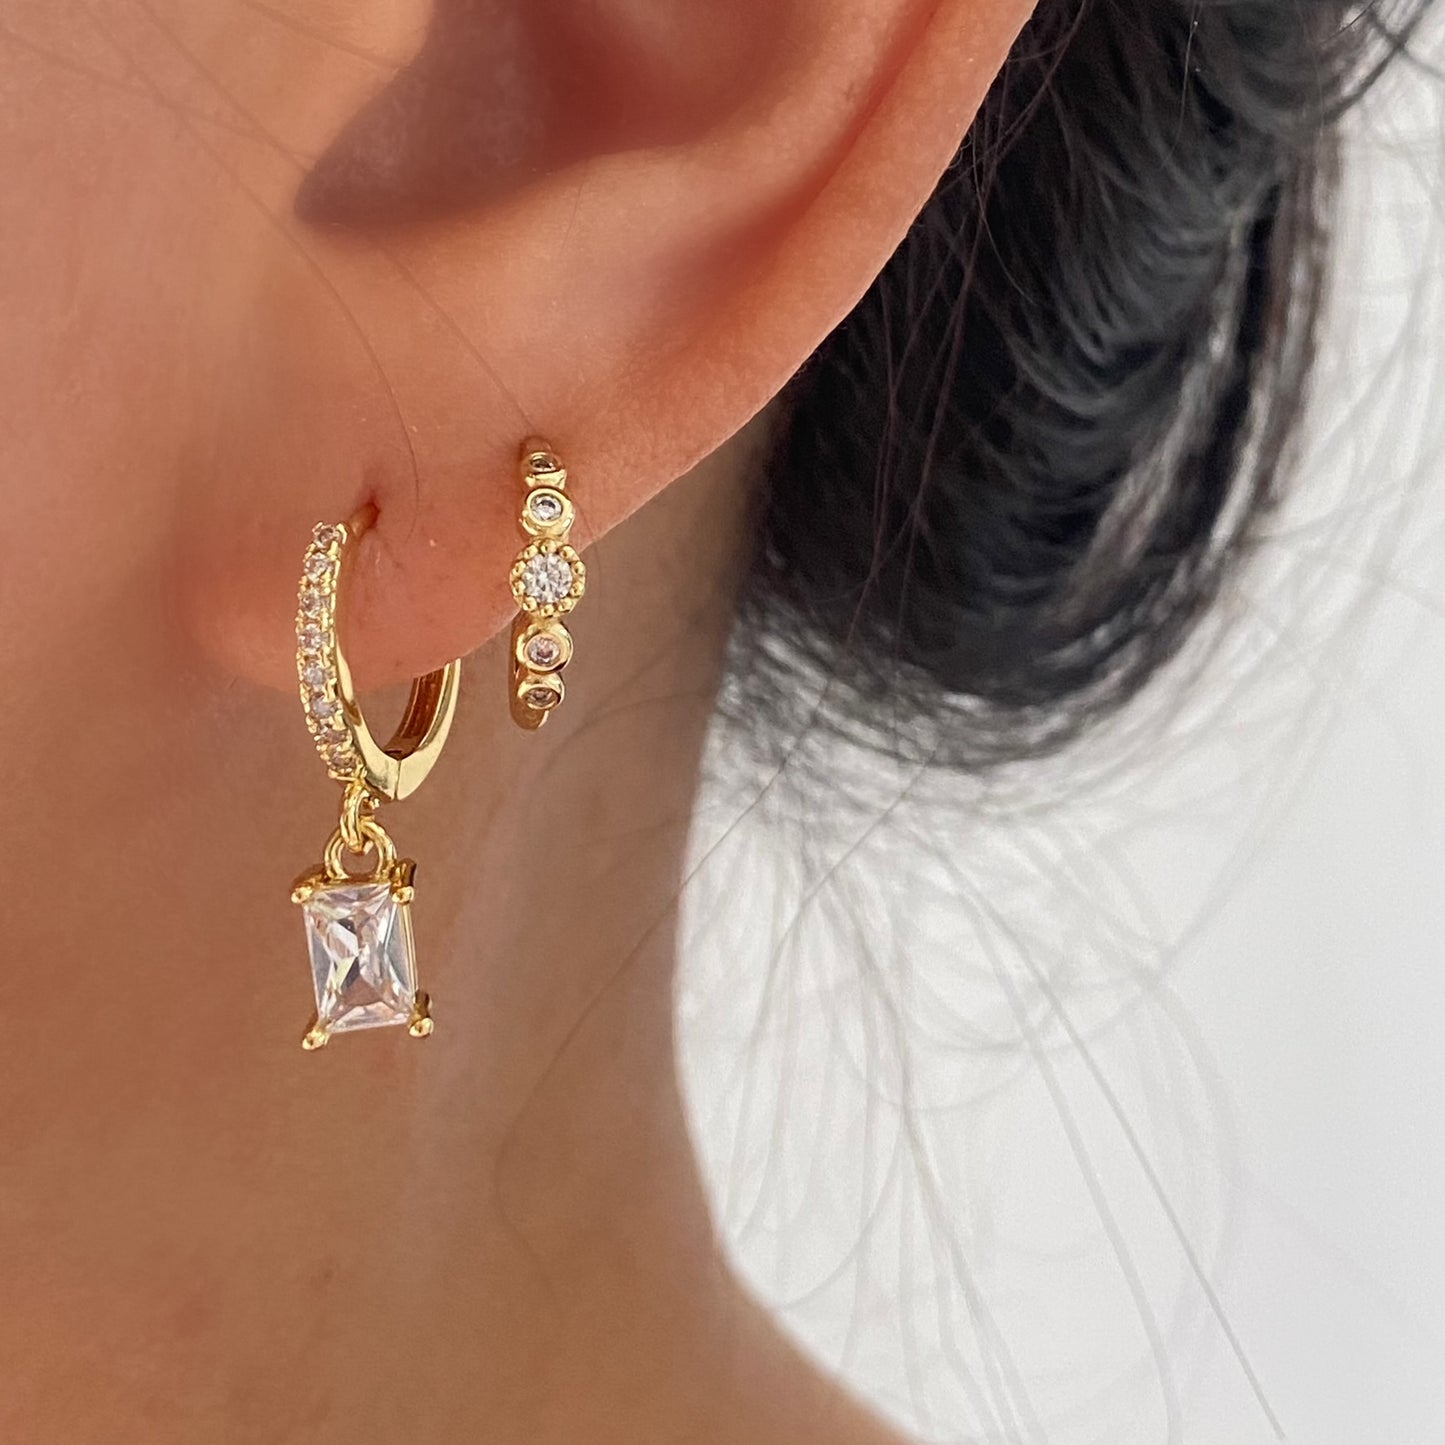 Baguette Dangle Earrings, Minimalist Gold Cubic Drop Earrings, Emerald dangle hoops, Pink Earrings, Square Cubic Drop Earrings